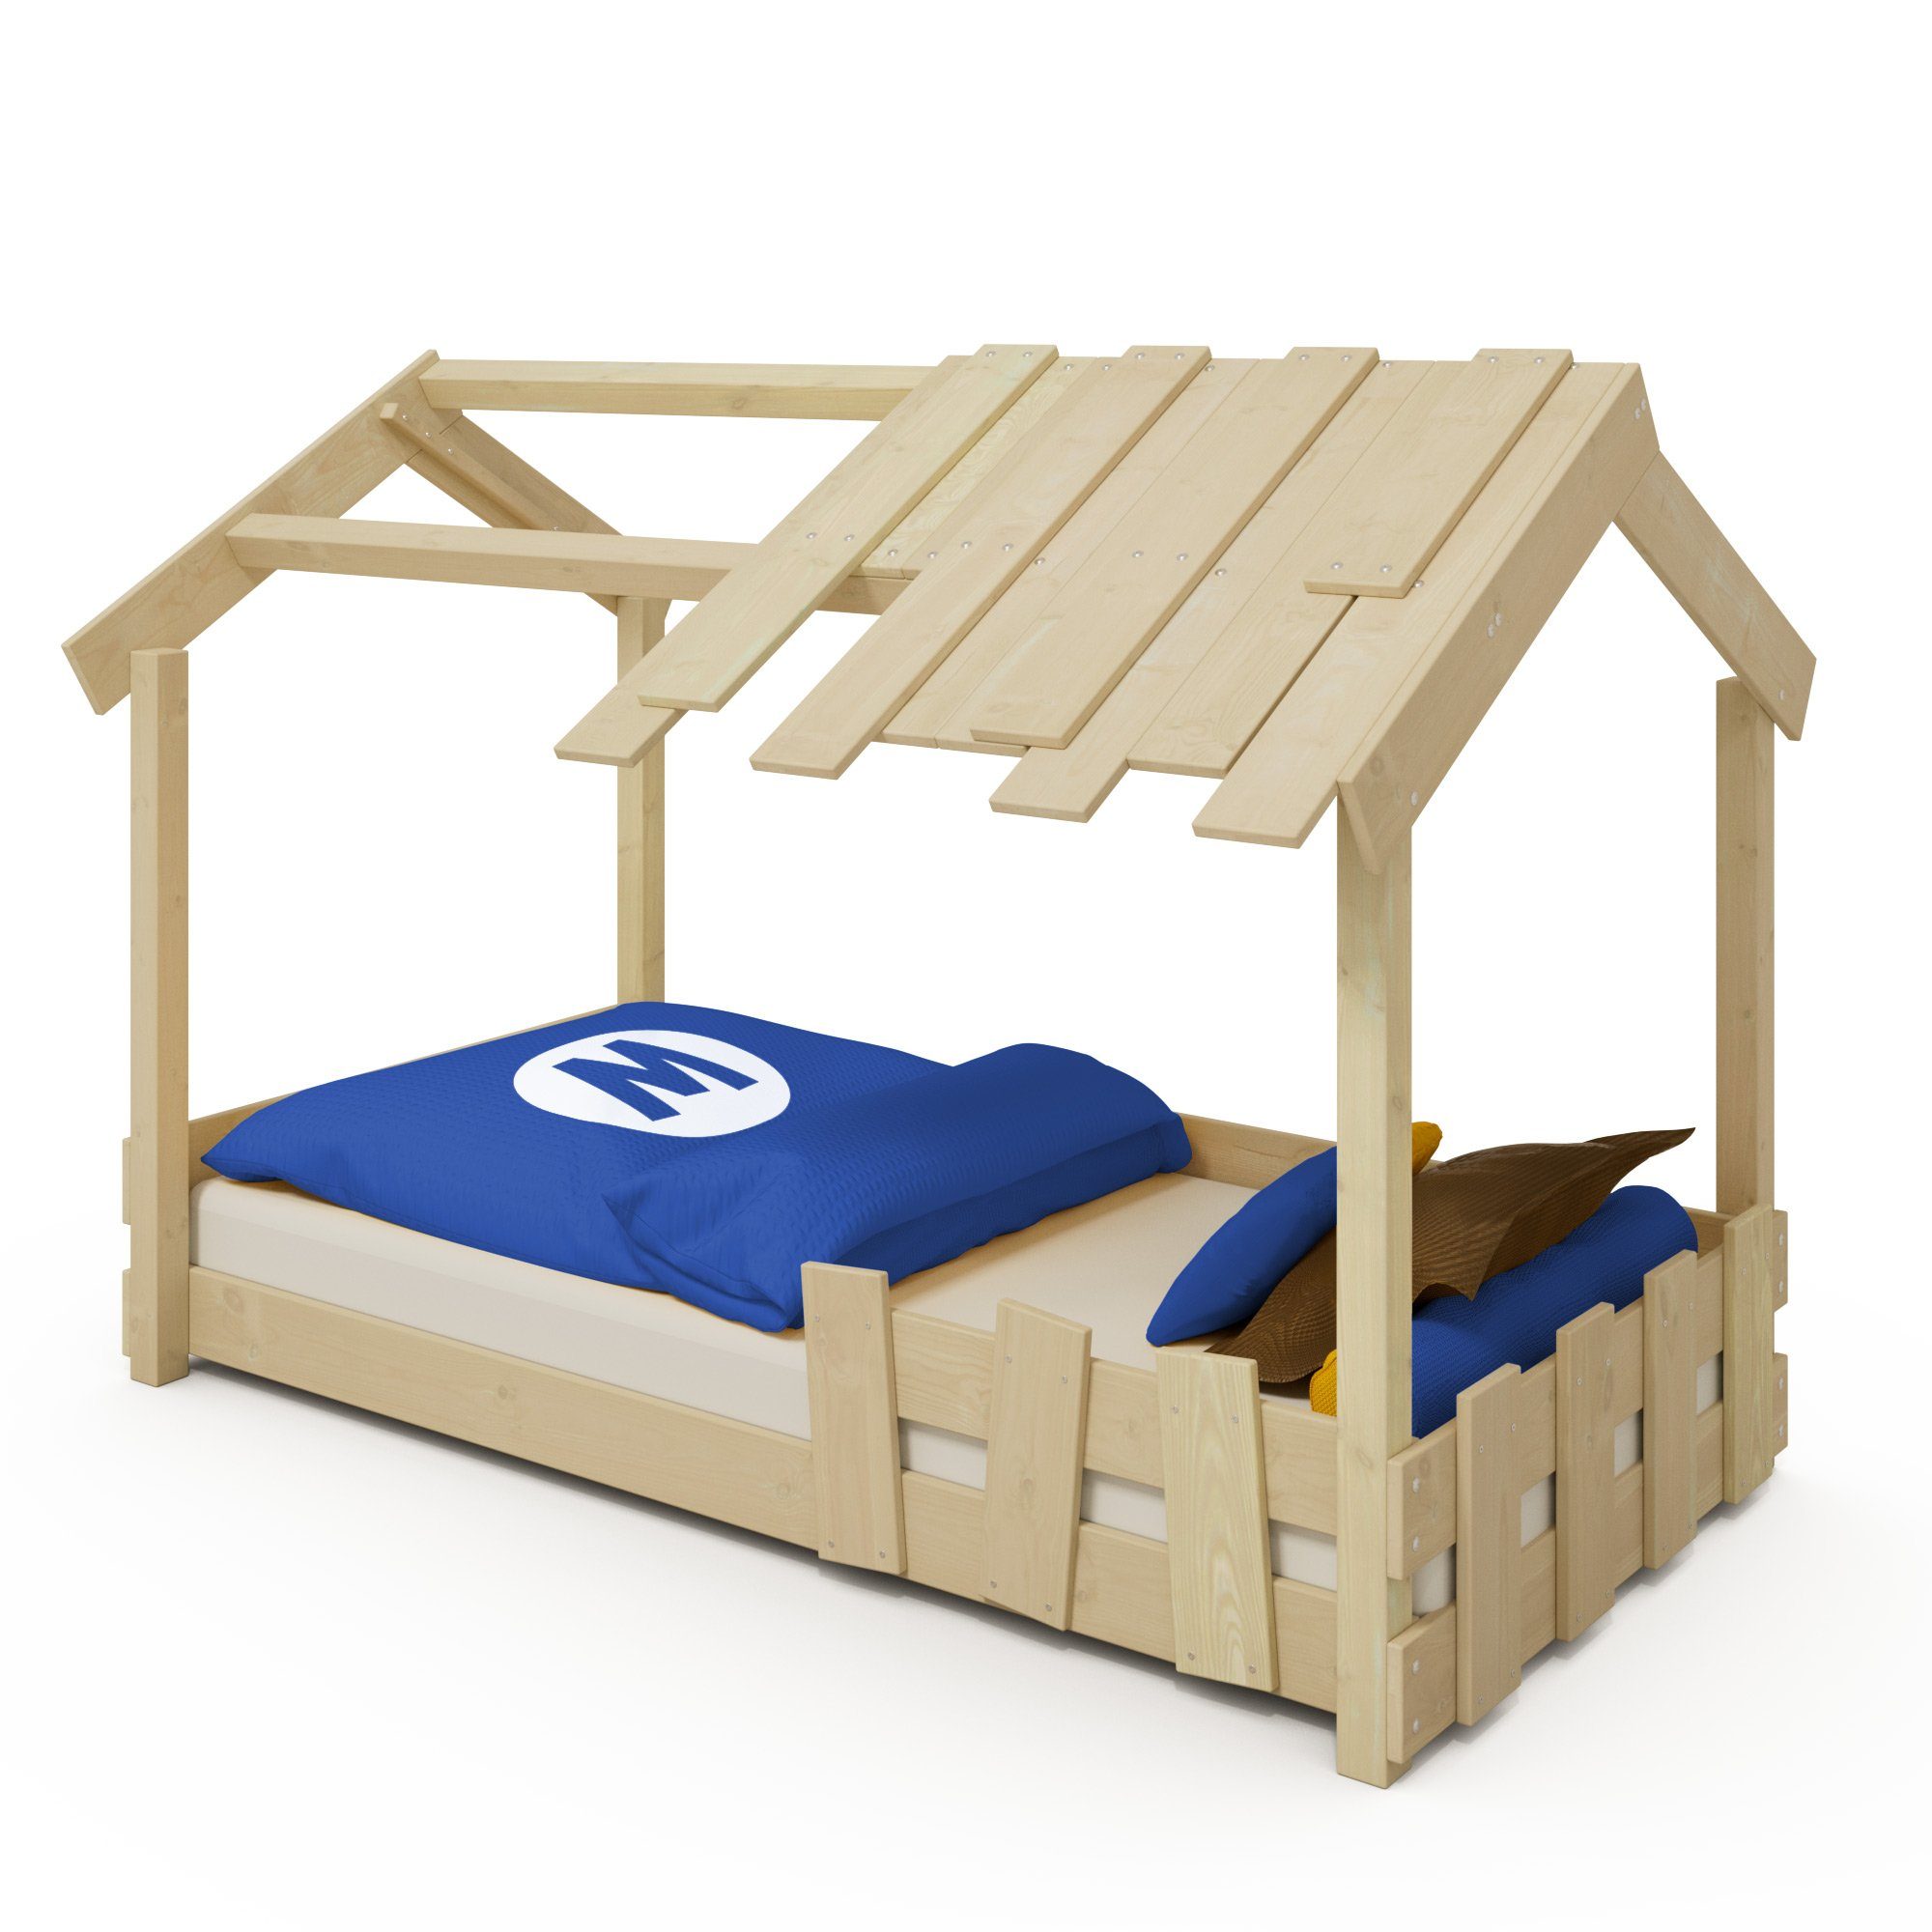 Wickey Kinderbett CrAzY Beach - Holzbett, Spielbett 90 x 200 cm (Holzpaket aus Pfosten und Brettern, Spielbett für Kinder), Massivholzbrett